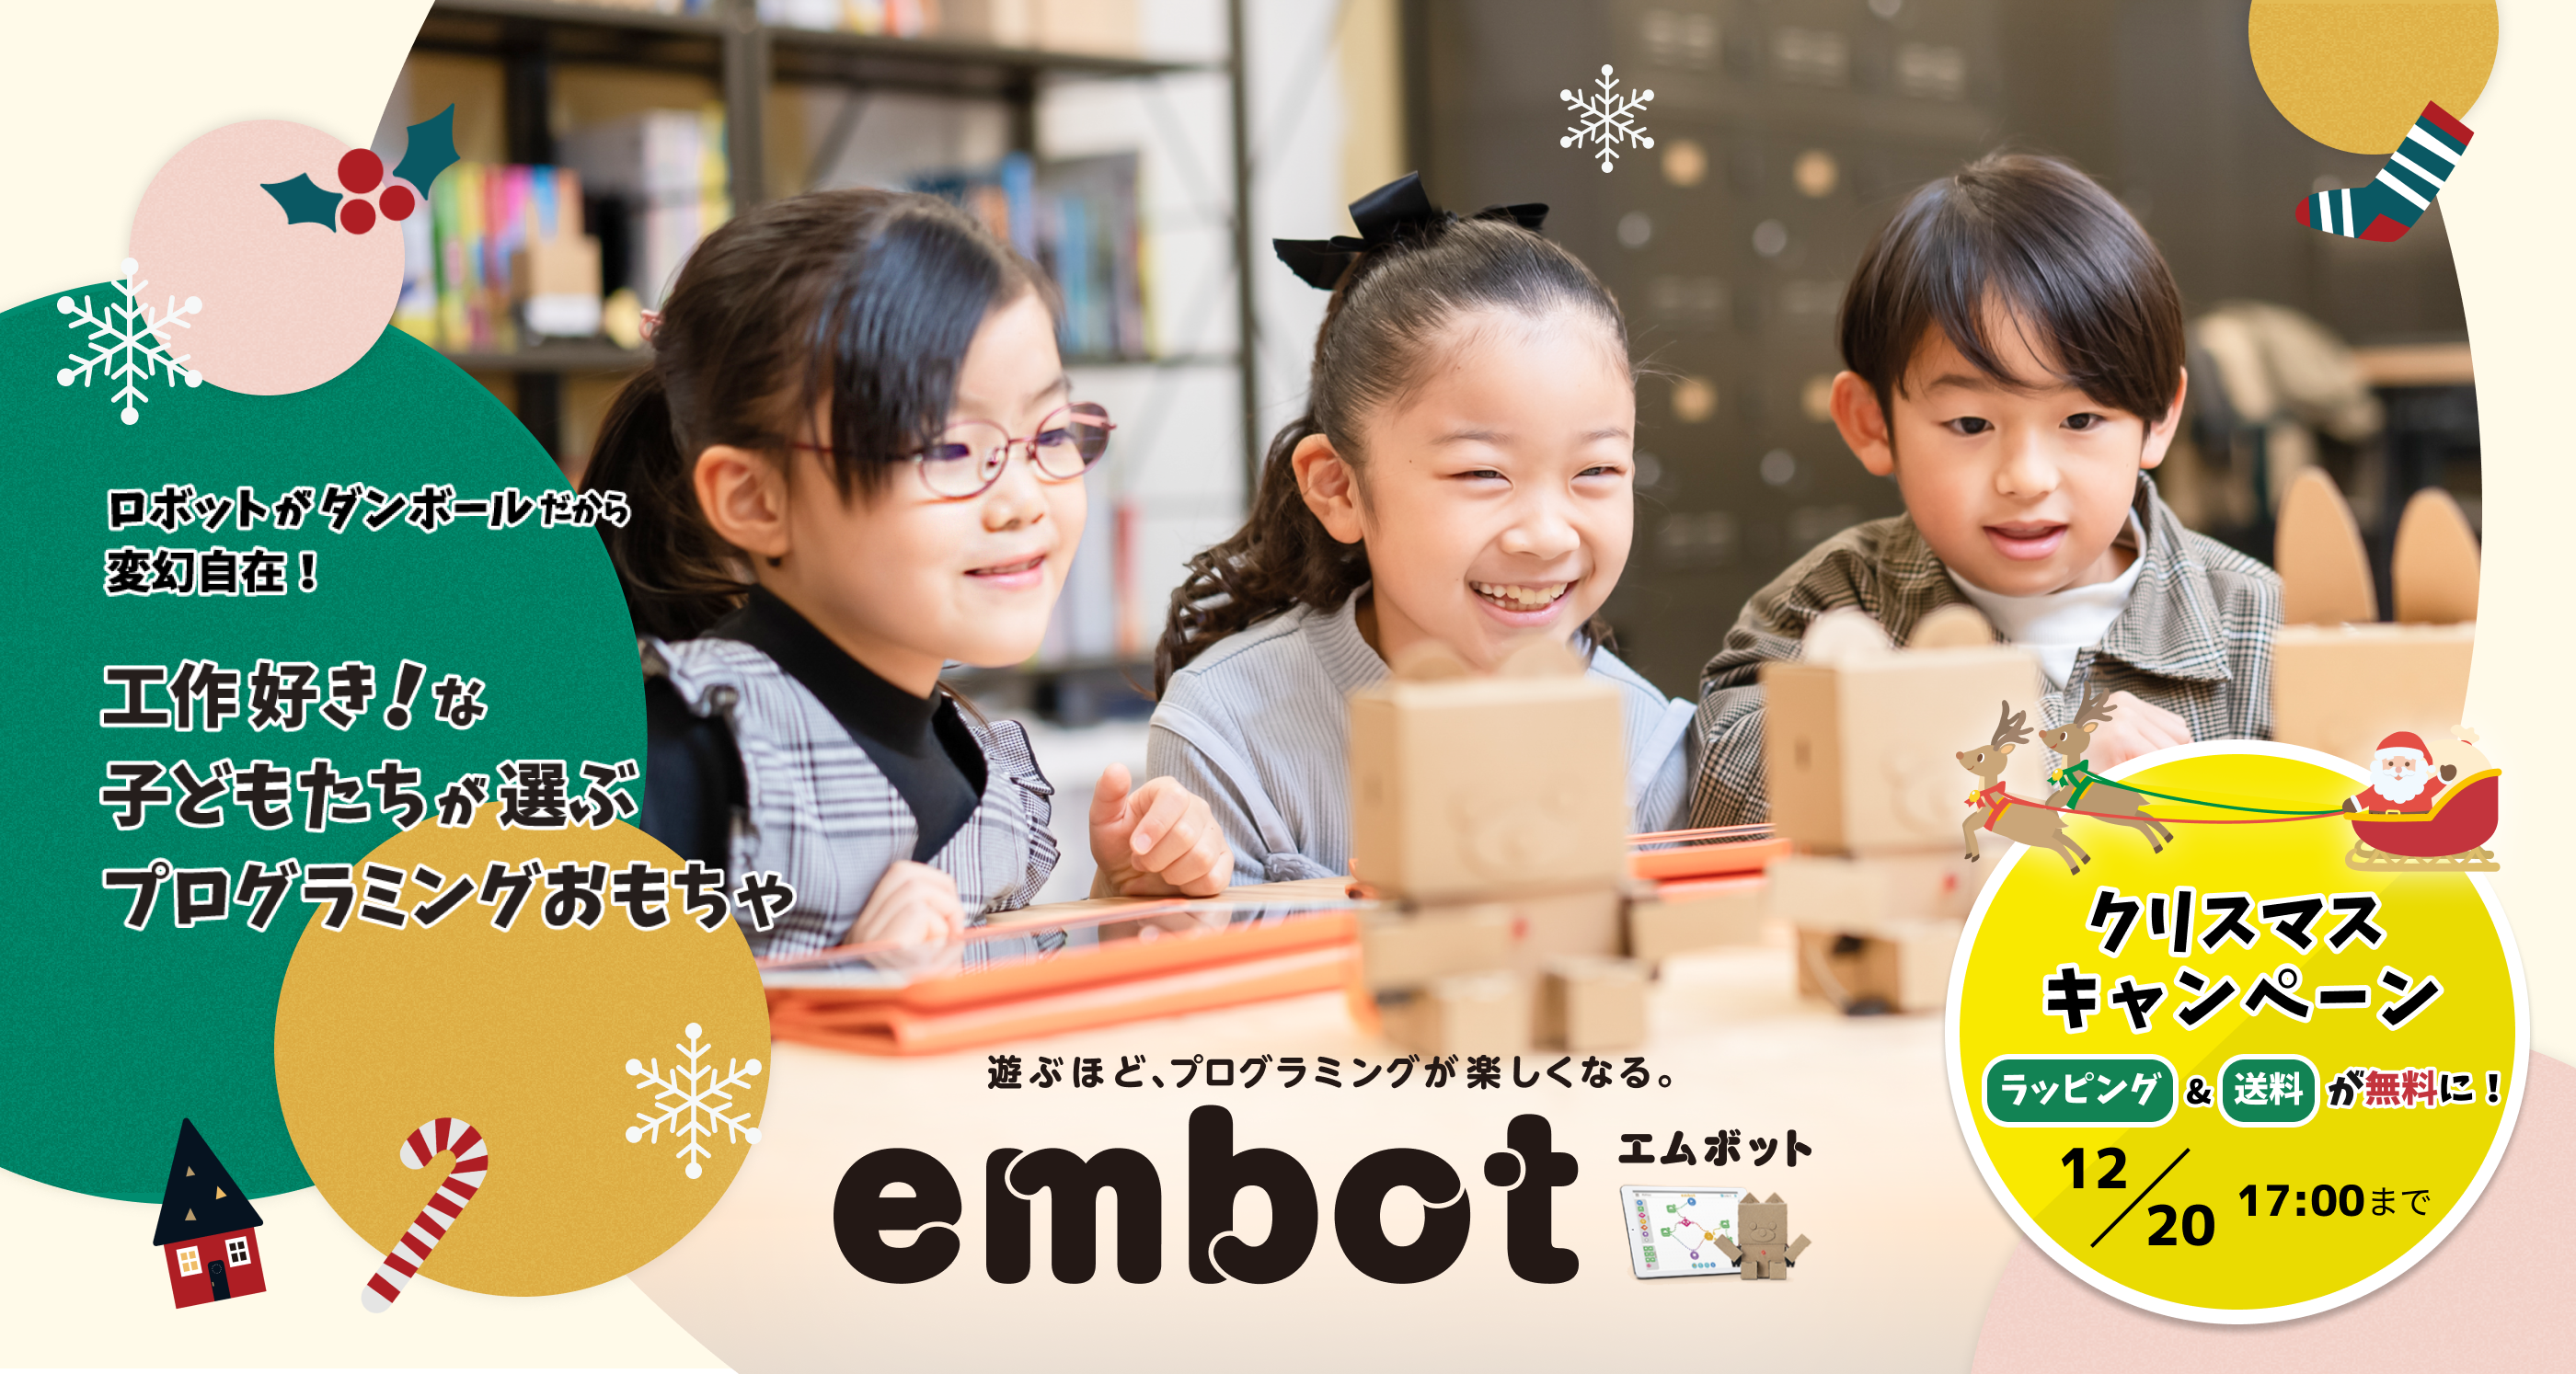 ロボットがダンボールだから変幻自在！工作好きな子どもたちが選ぶプログラミングおもちゃ　遊ぶほどプログラミングが楽しくなる　クリスマスキャンペーン　ラッピング&送料が無料に！